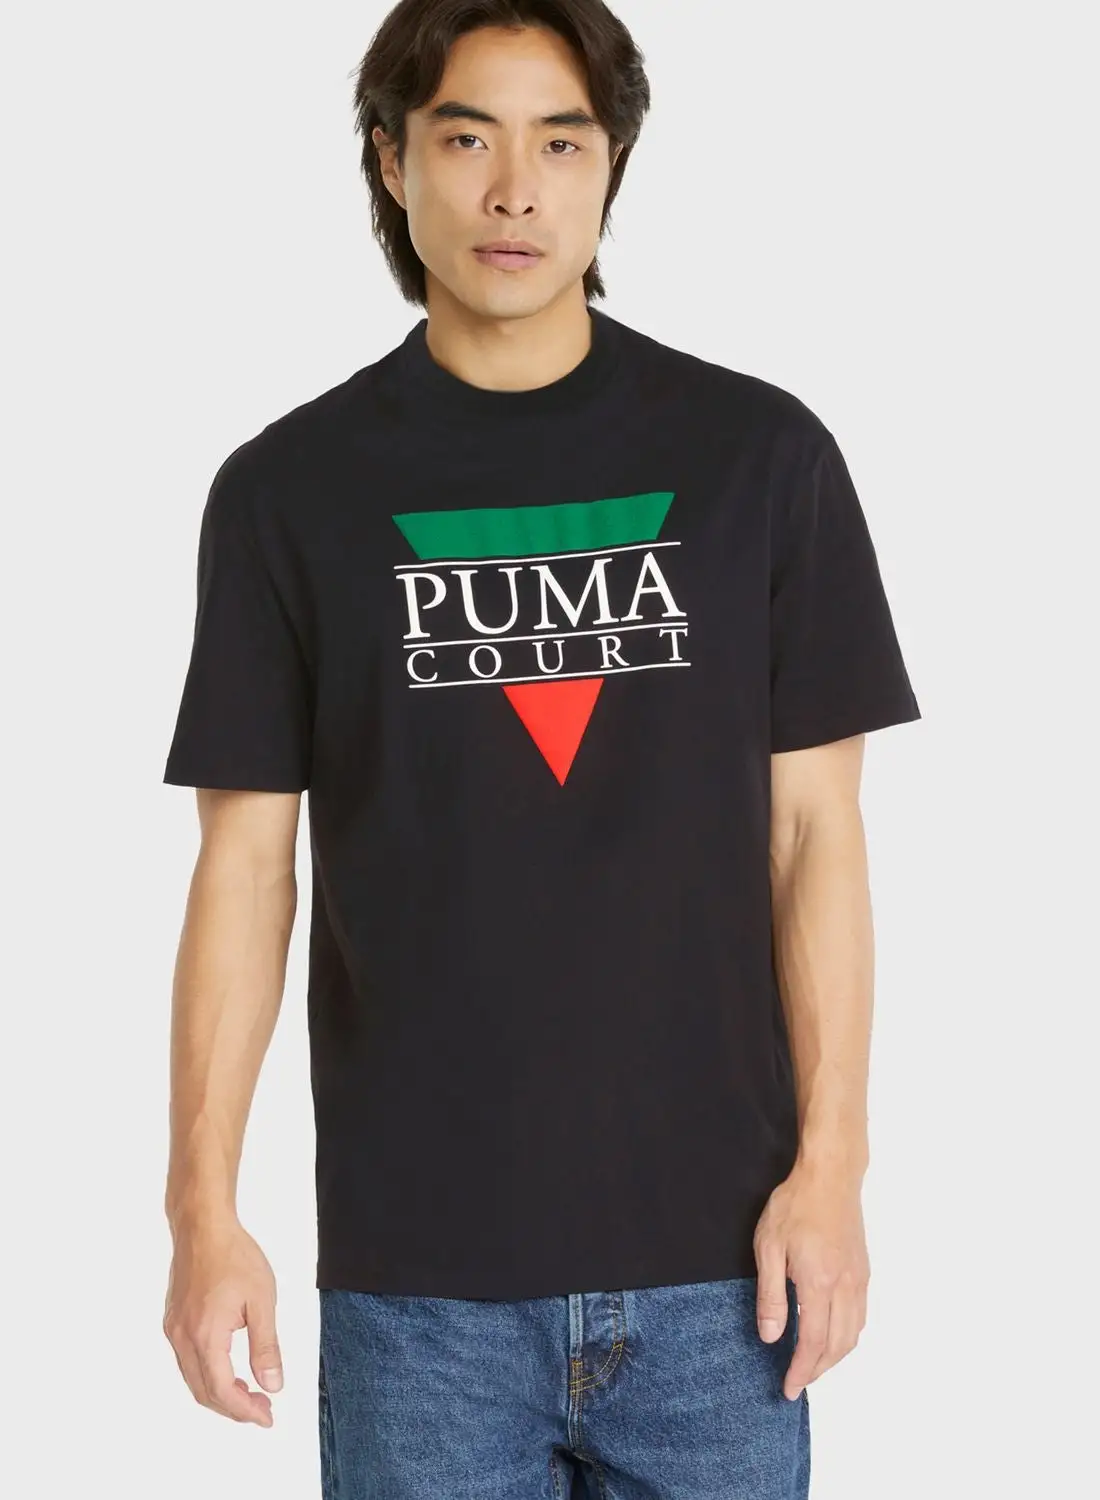 PUMA Tennis Club Graphic T-Shirt